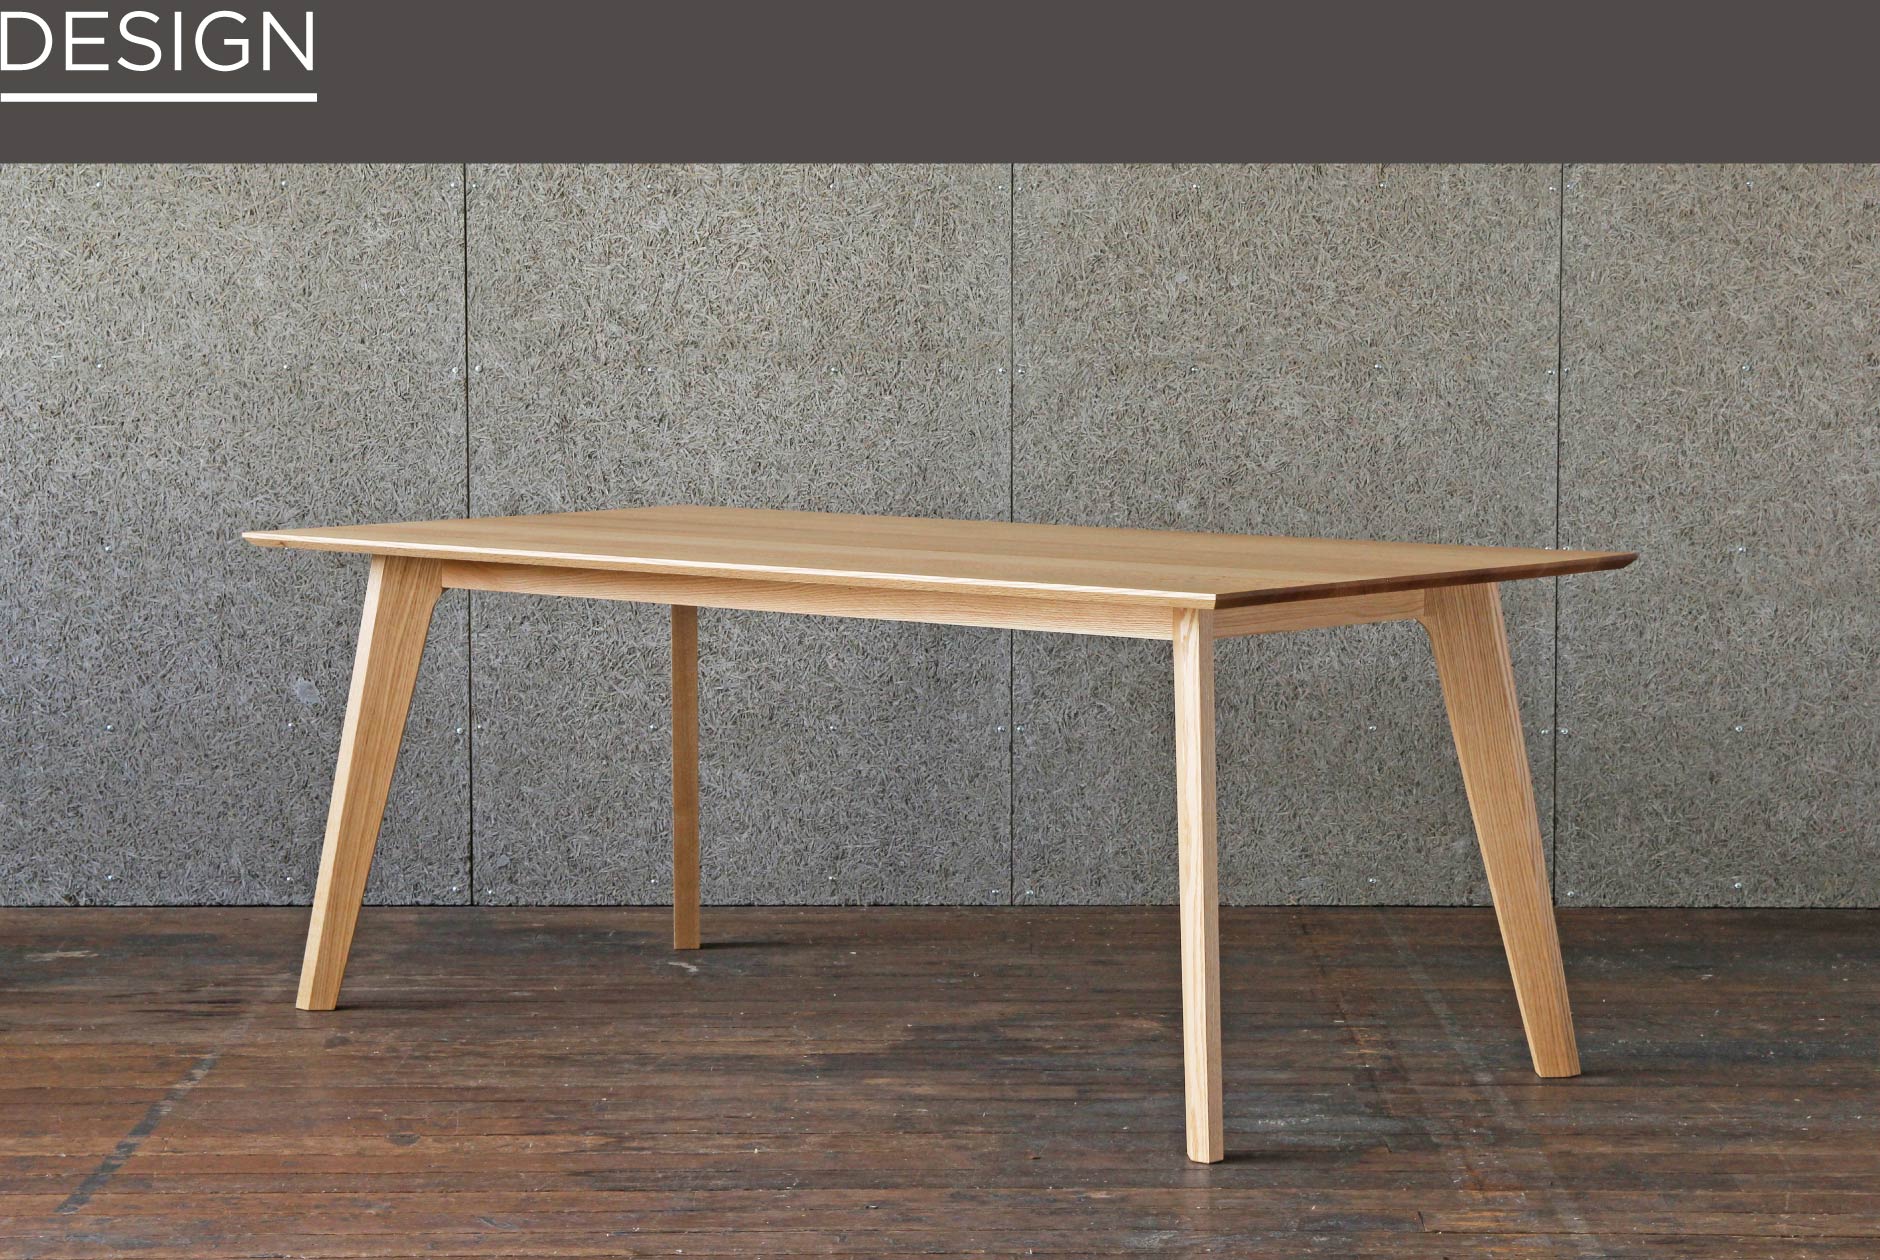 大阪店の家具の中でもシンプルでスッキリとしたデザインが特徴のダイニングテーブル。ウォールナット等の材種が選べます。